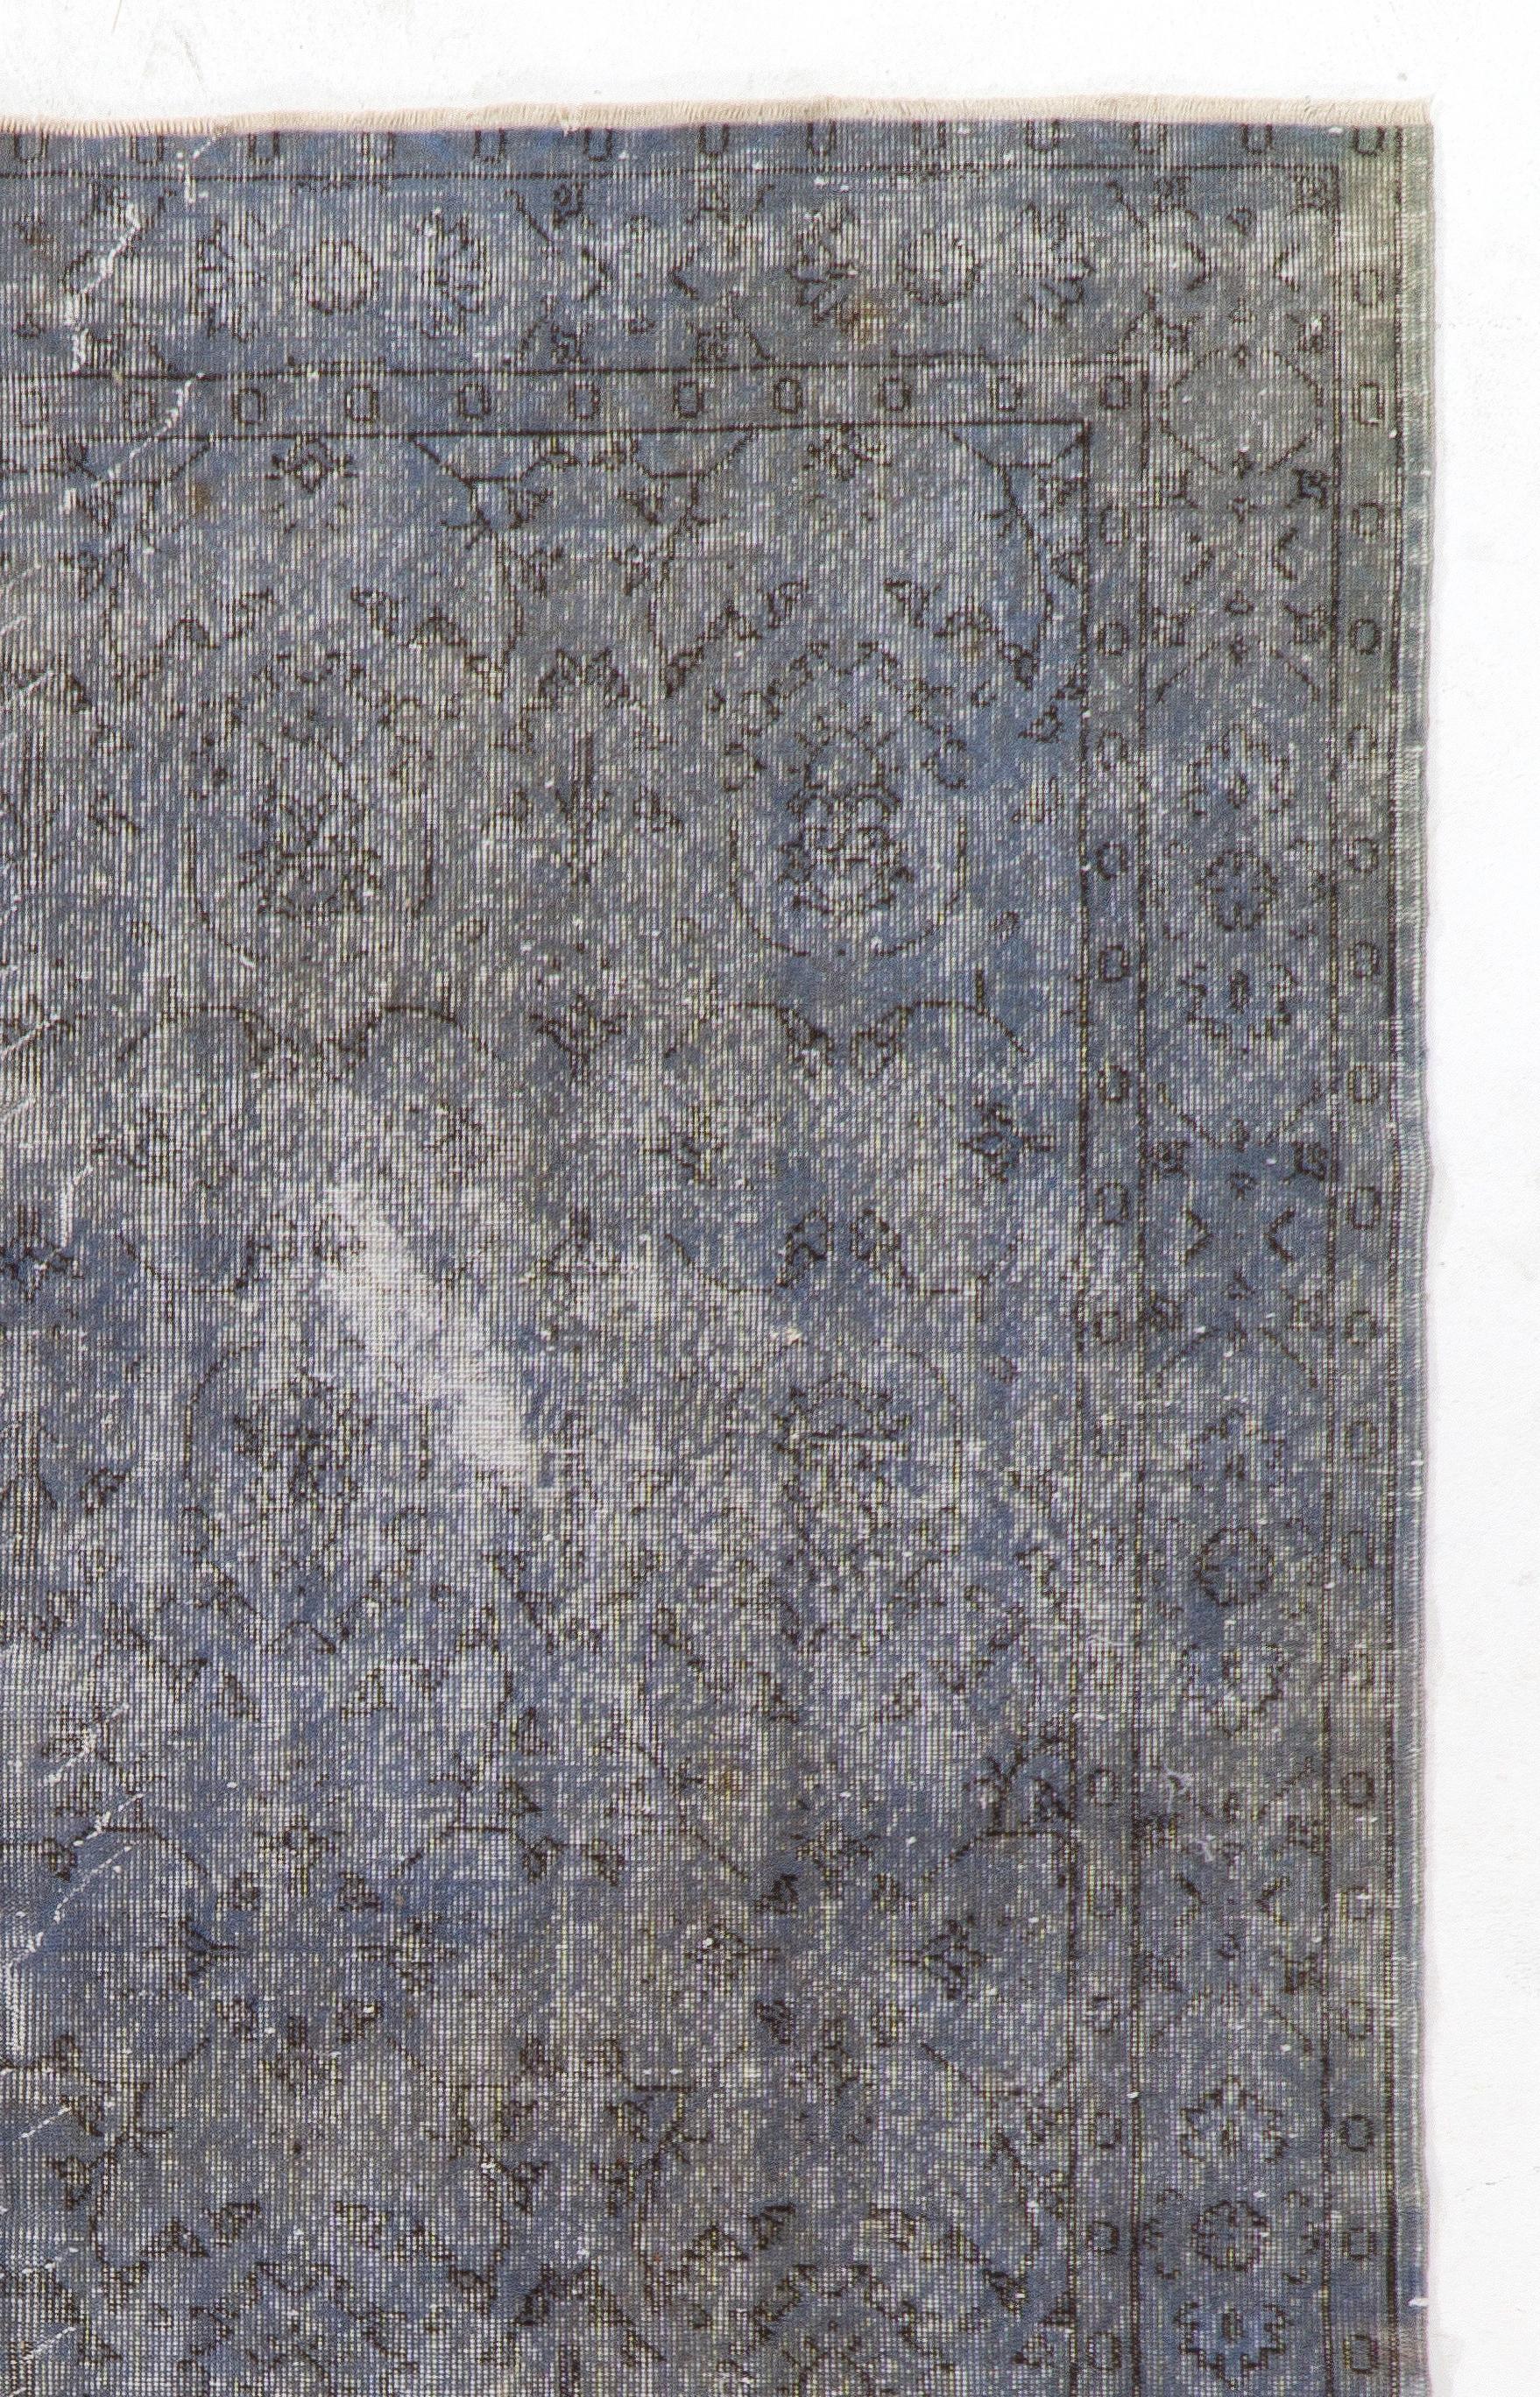 Ein türkischer Teppich im Vintage-Stil, neu gefärbt in hellem Blau für moderne Innenräume.
Fein handgeknüpft, niedriger Wollflor auf Baumwollbasis. Professionell gewaschen.
Robust und geeignet für stark frequentierte Bereiche, sowohl für Wohn- als